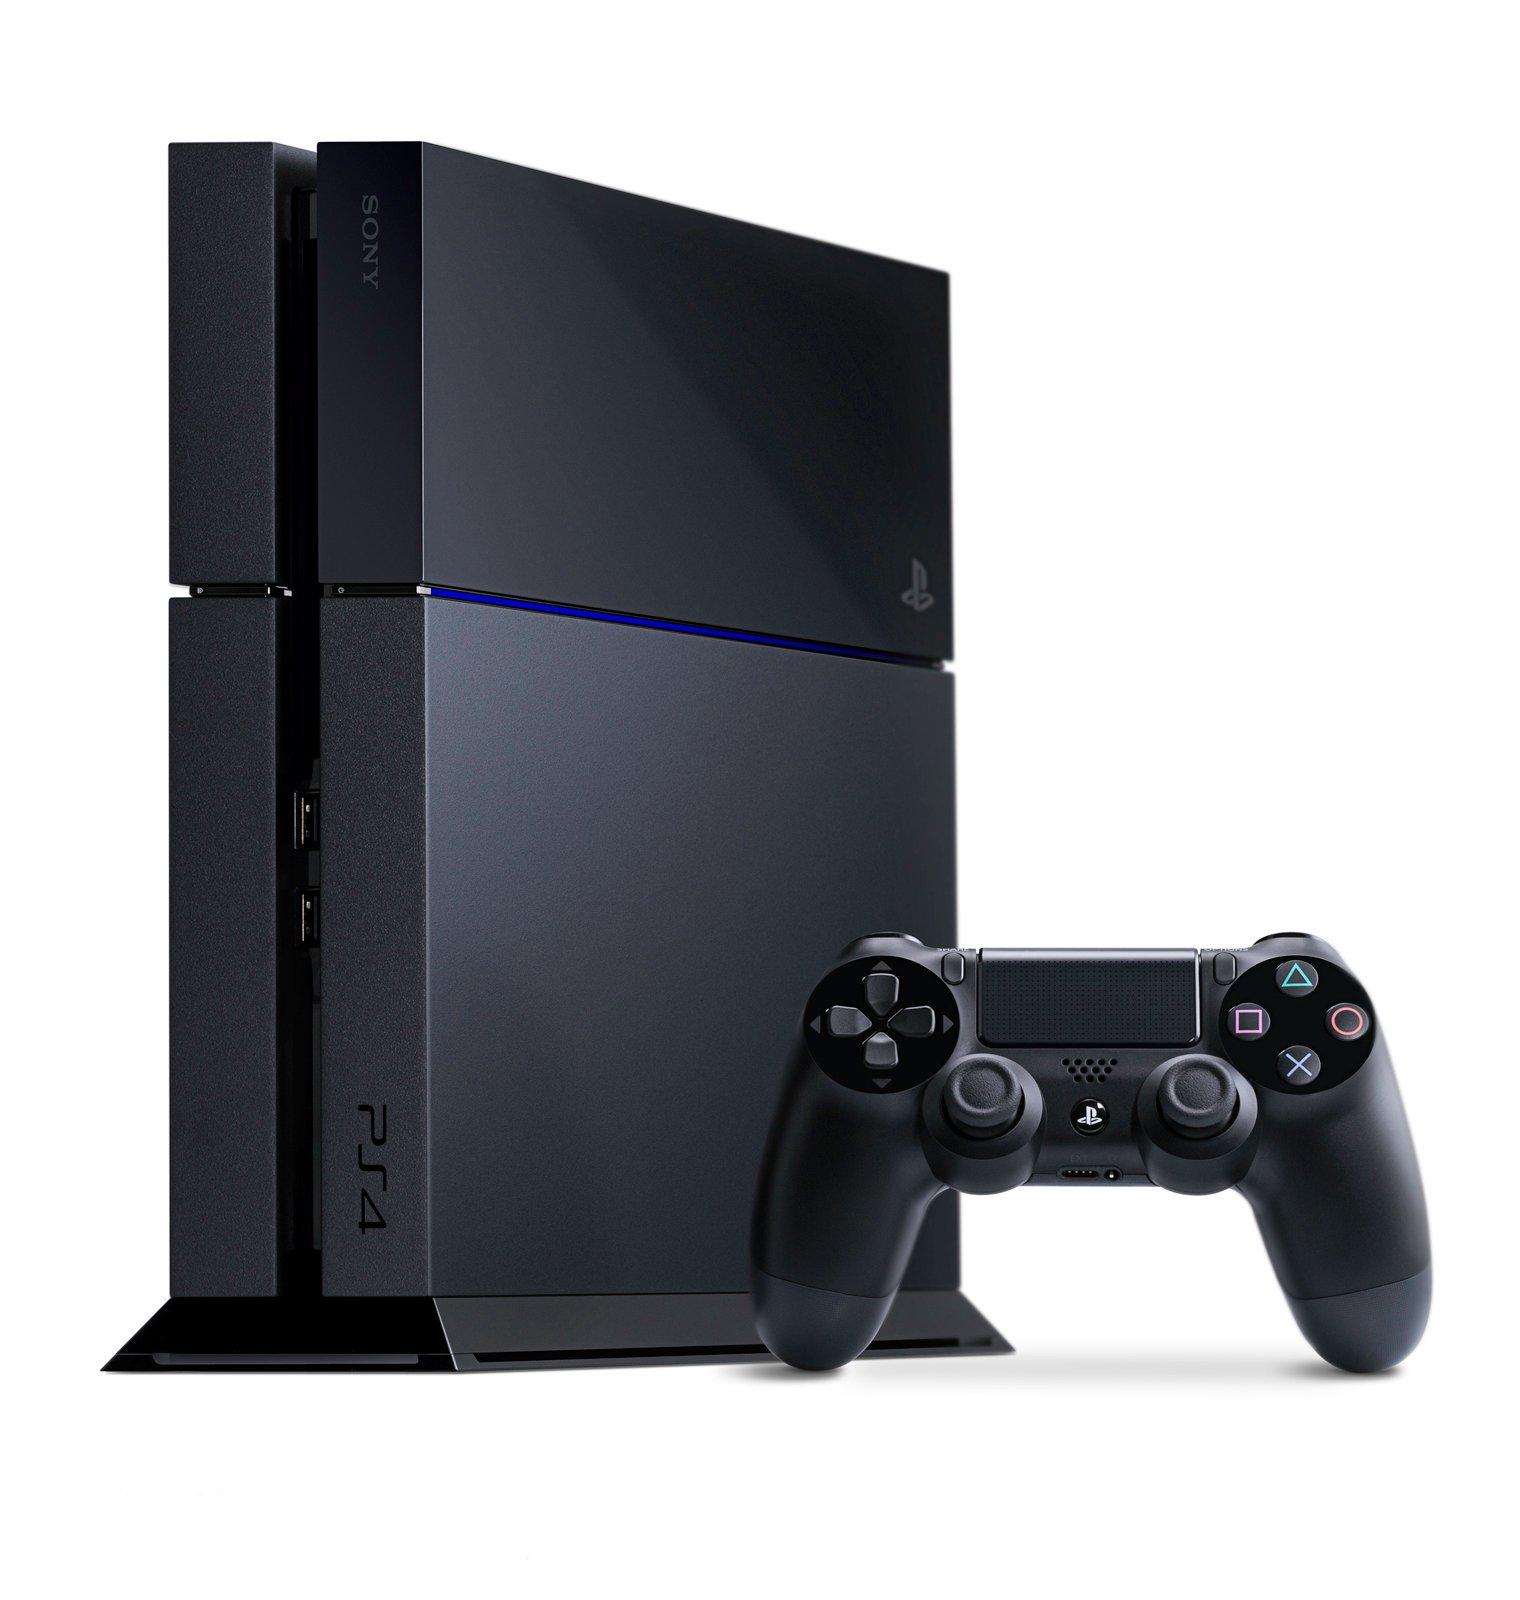 Sony PlayStation 4 500GB Console Black